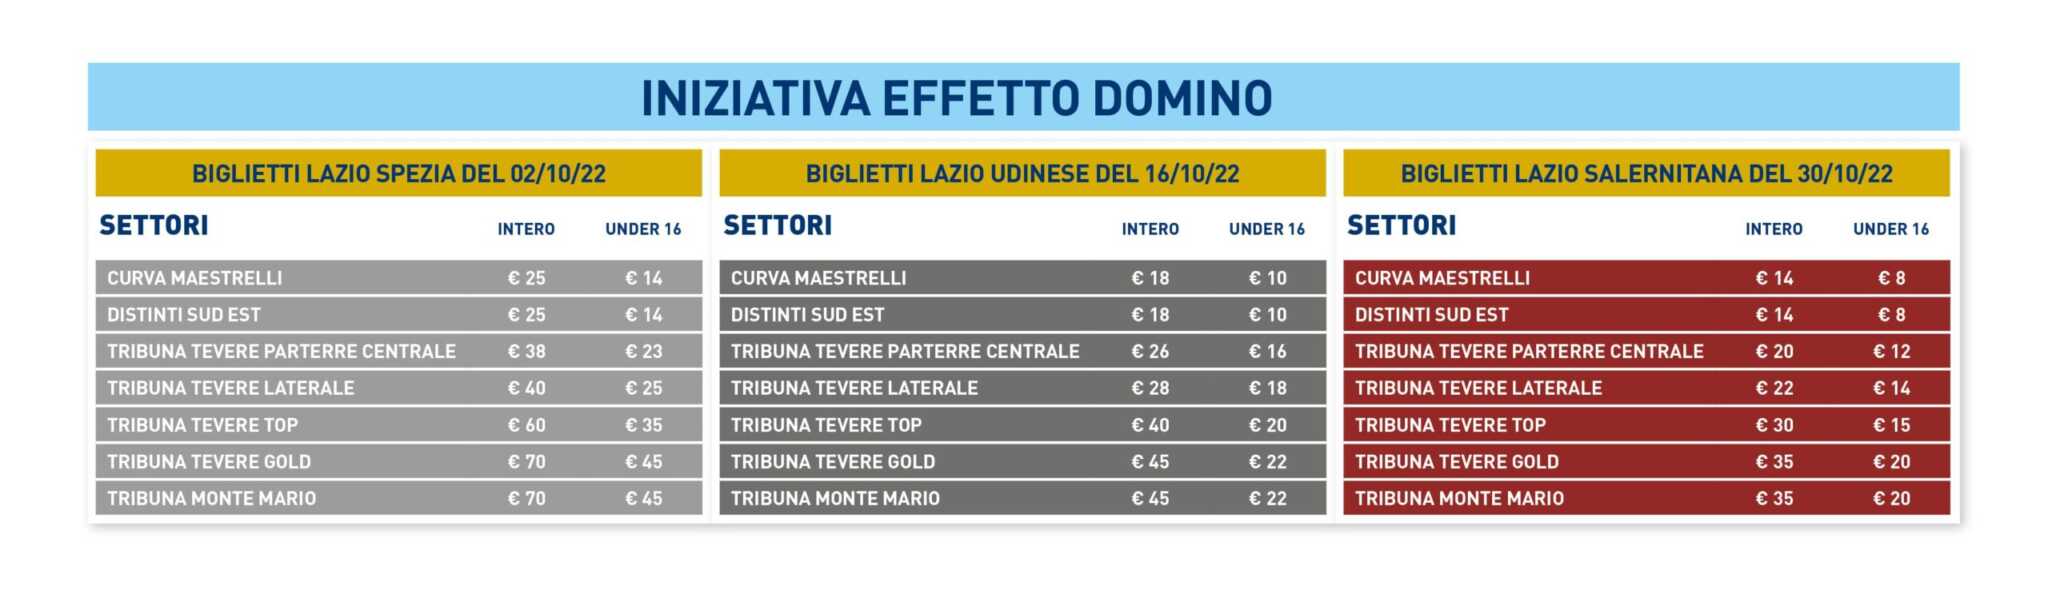 Biglietti Lazio promozione effetto domino